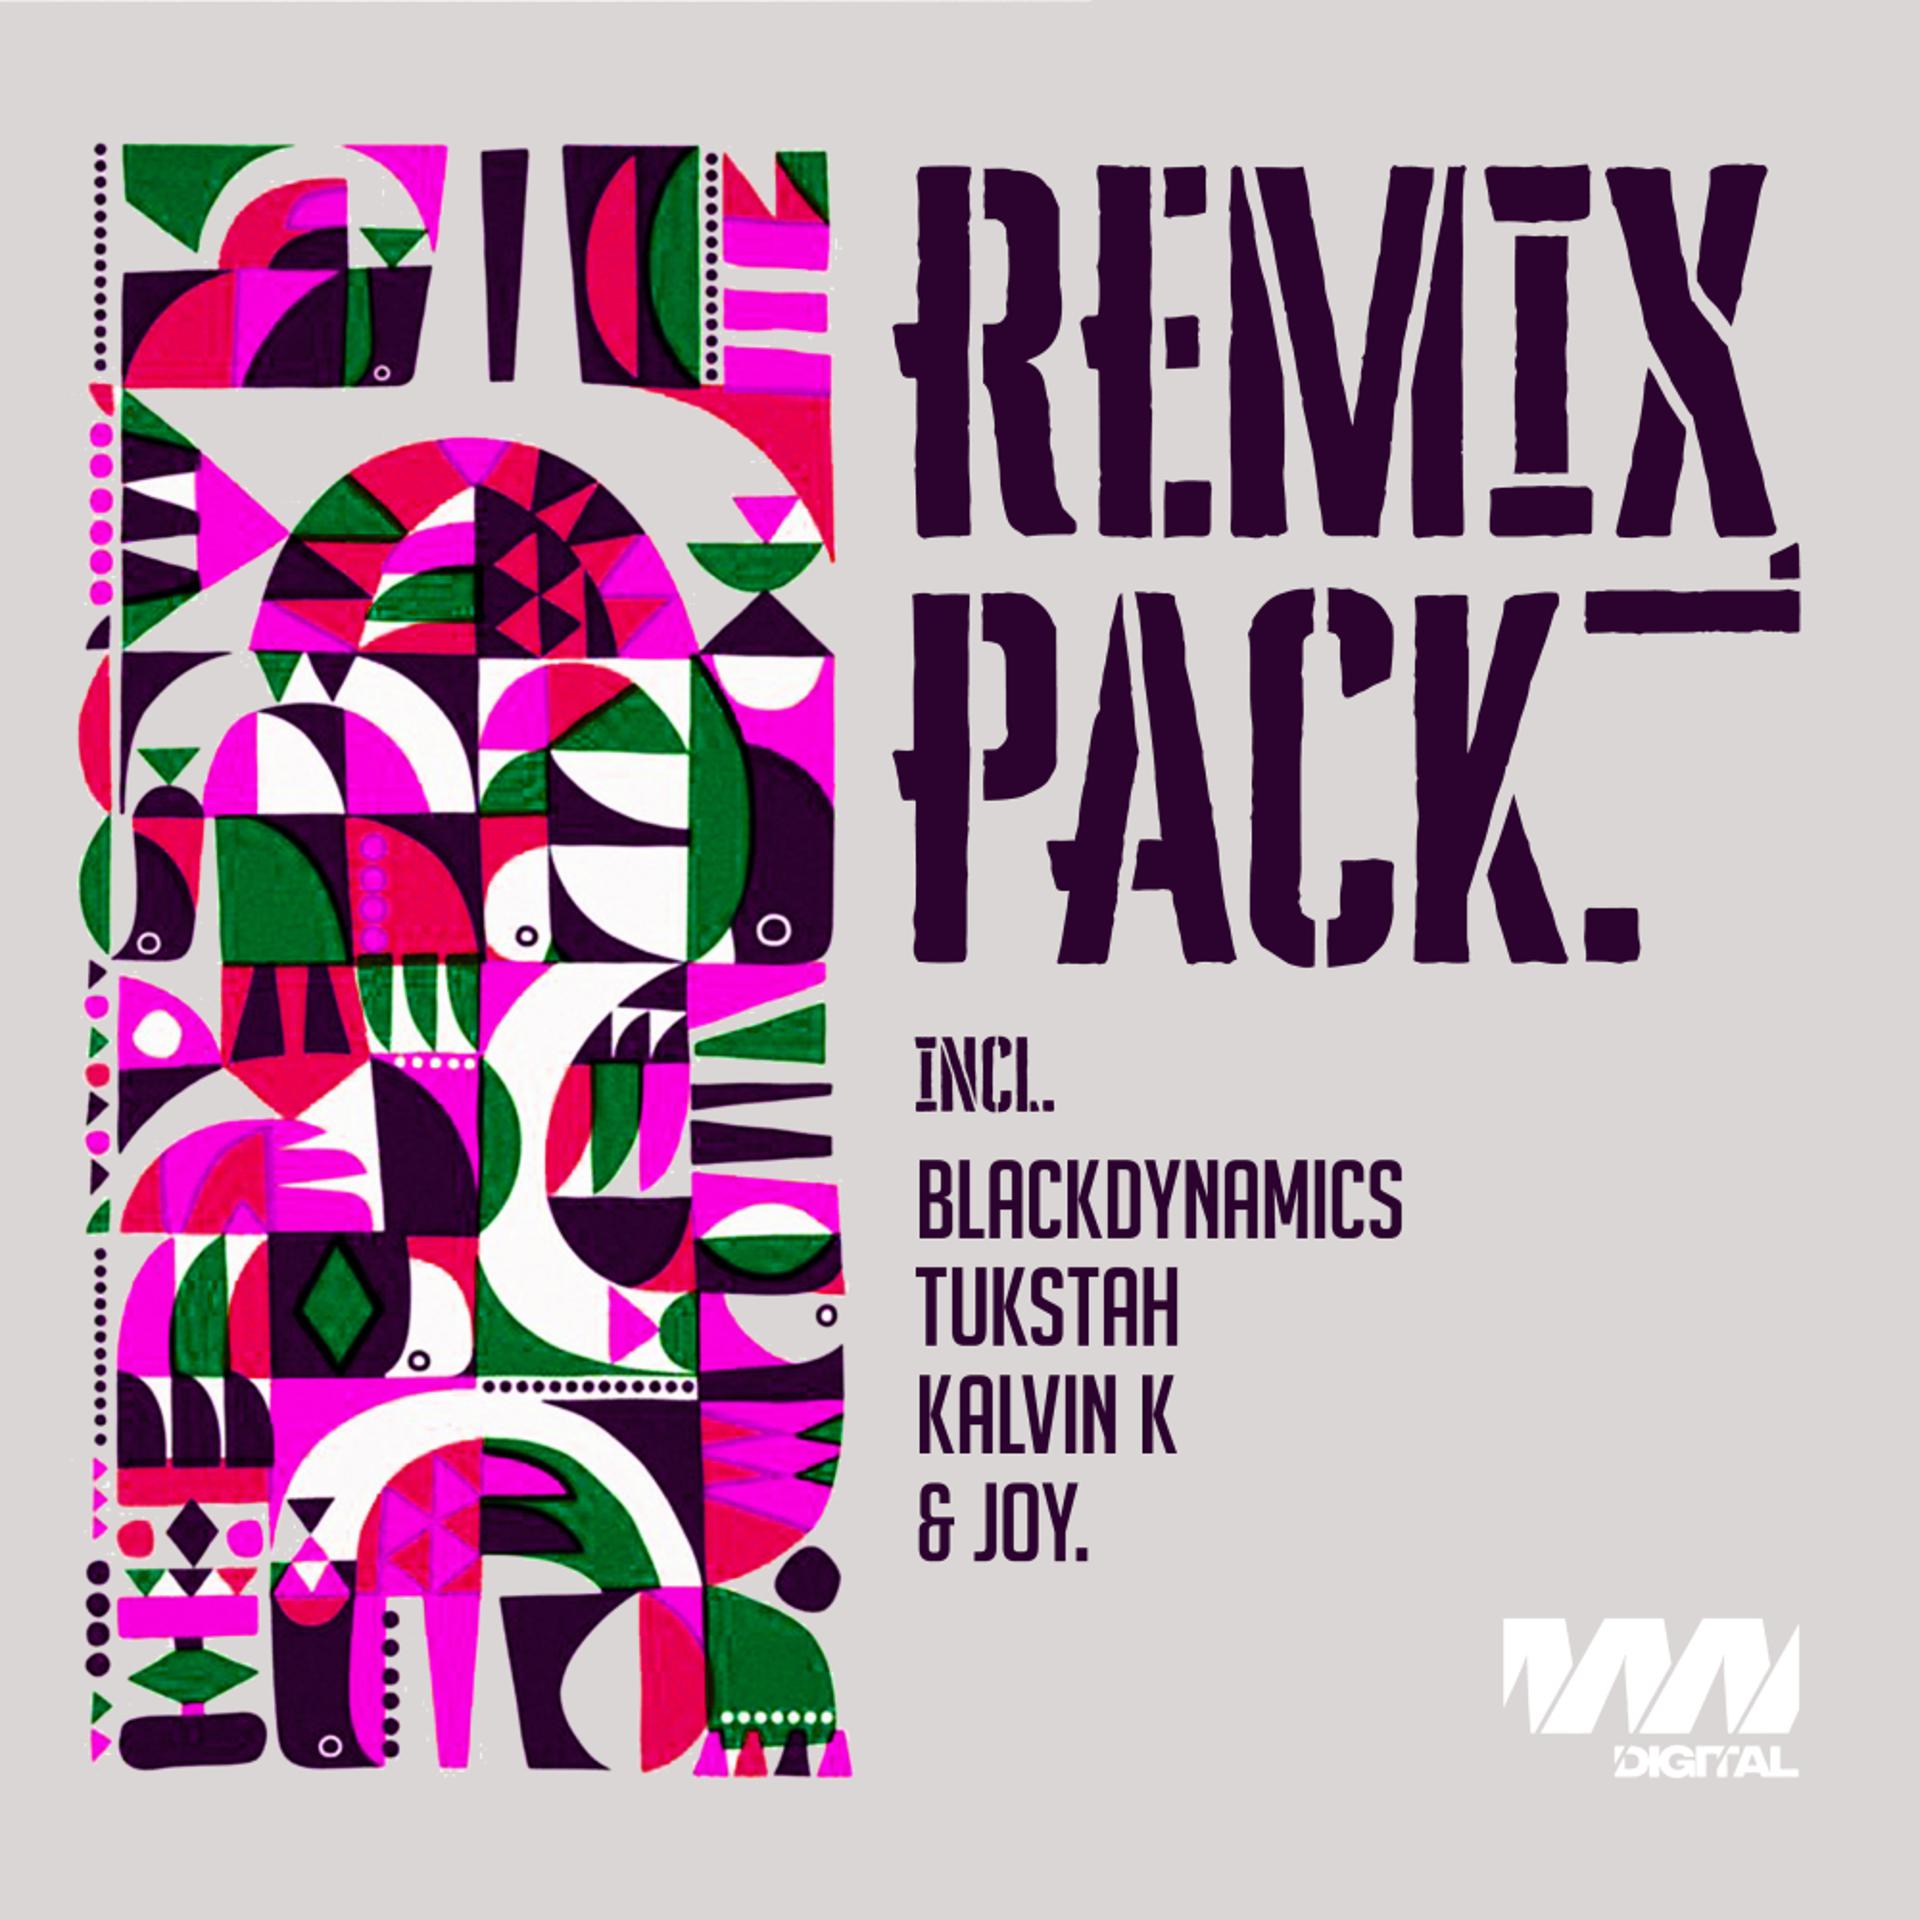 Постер альбома Remix Pack